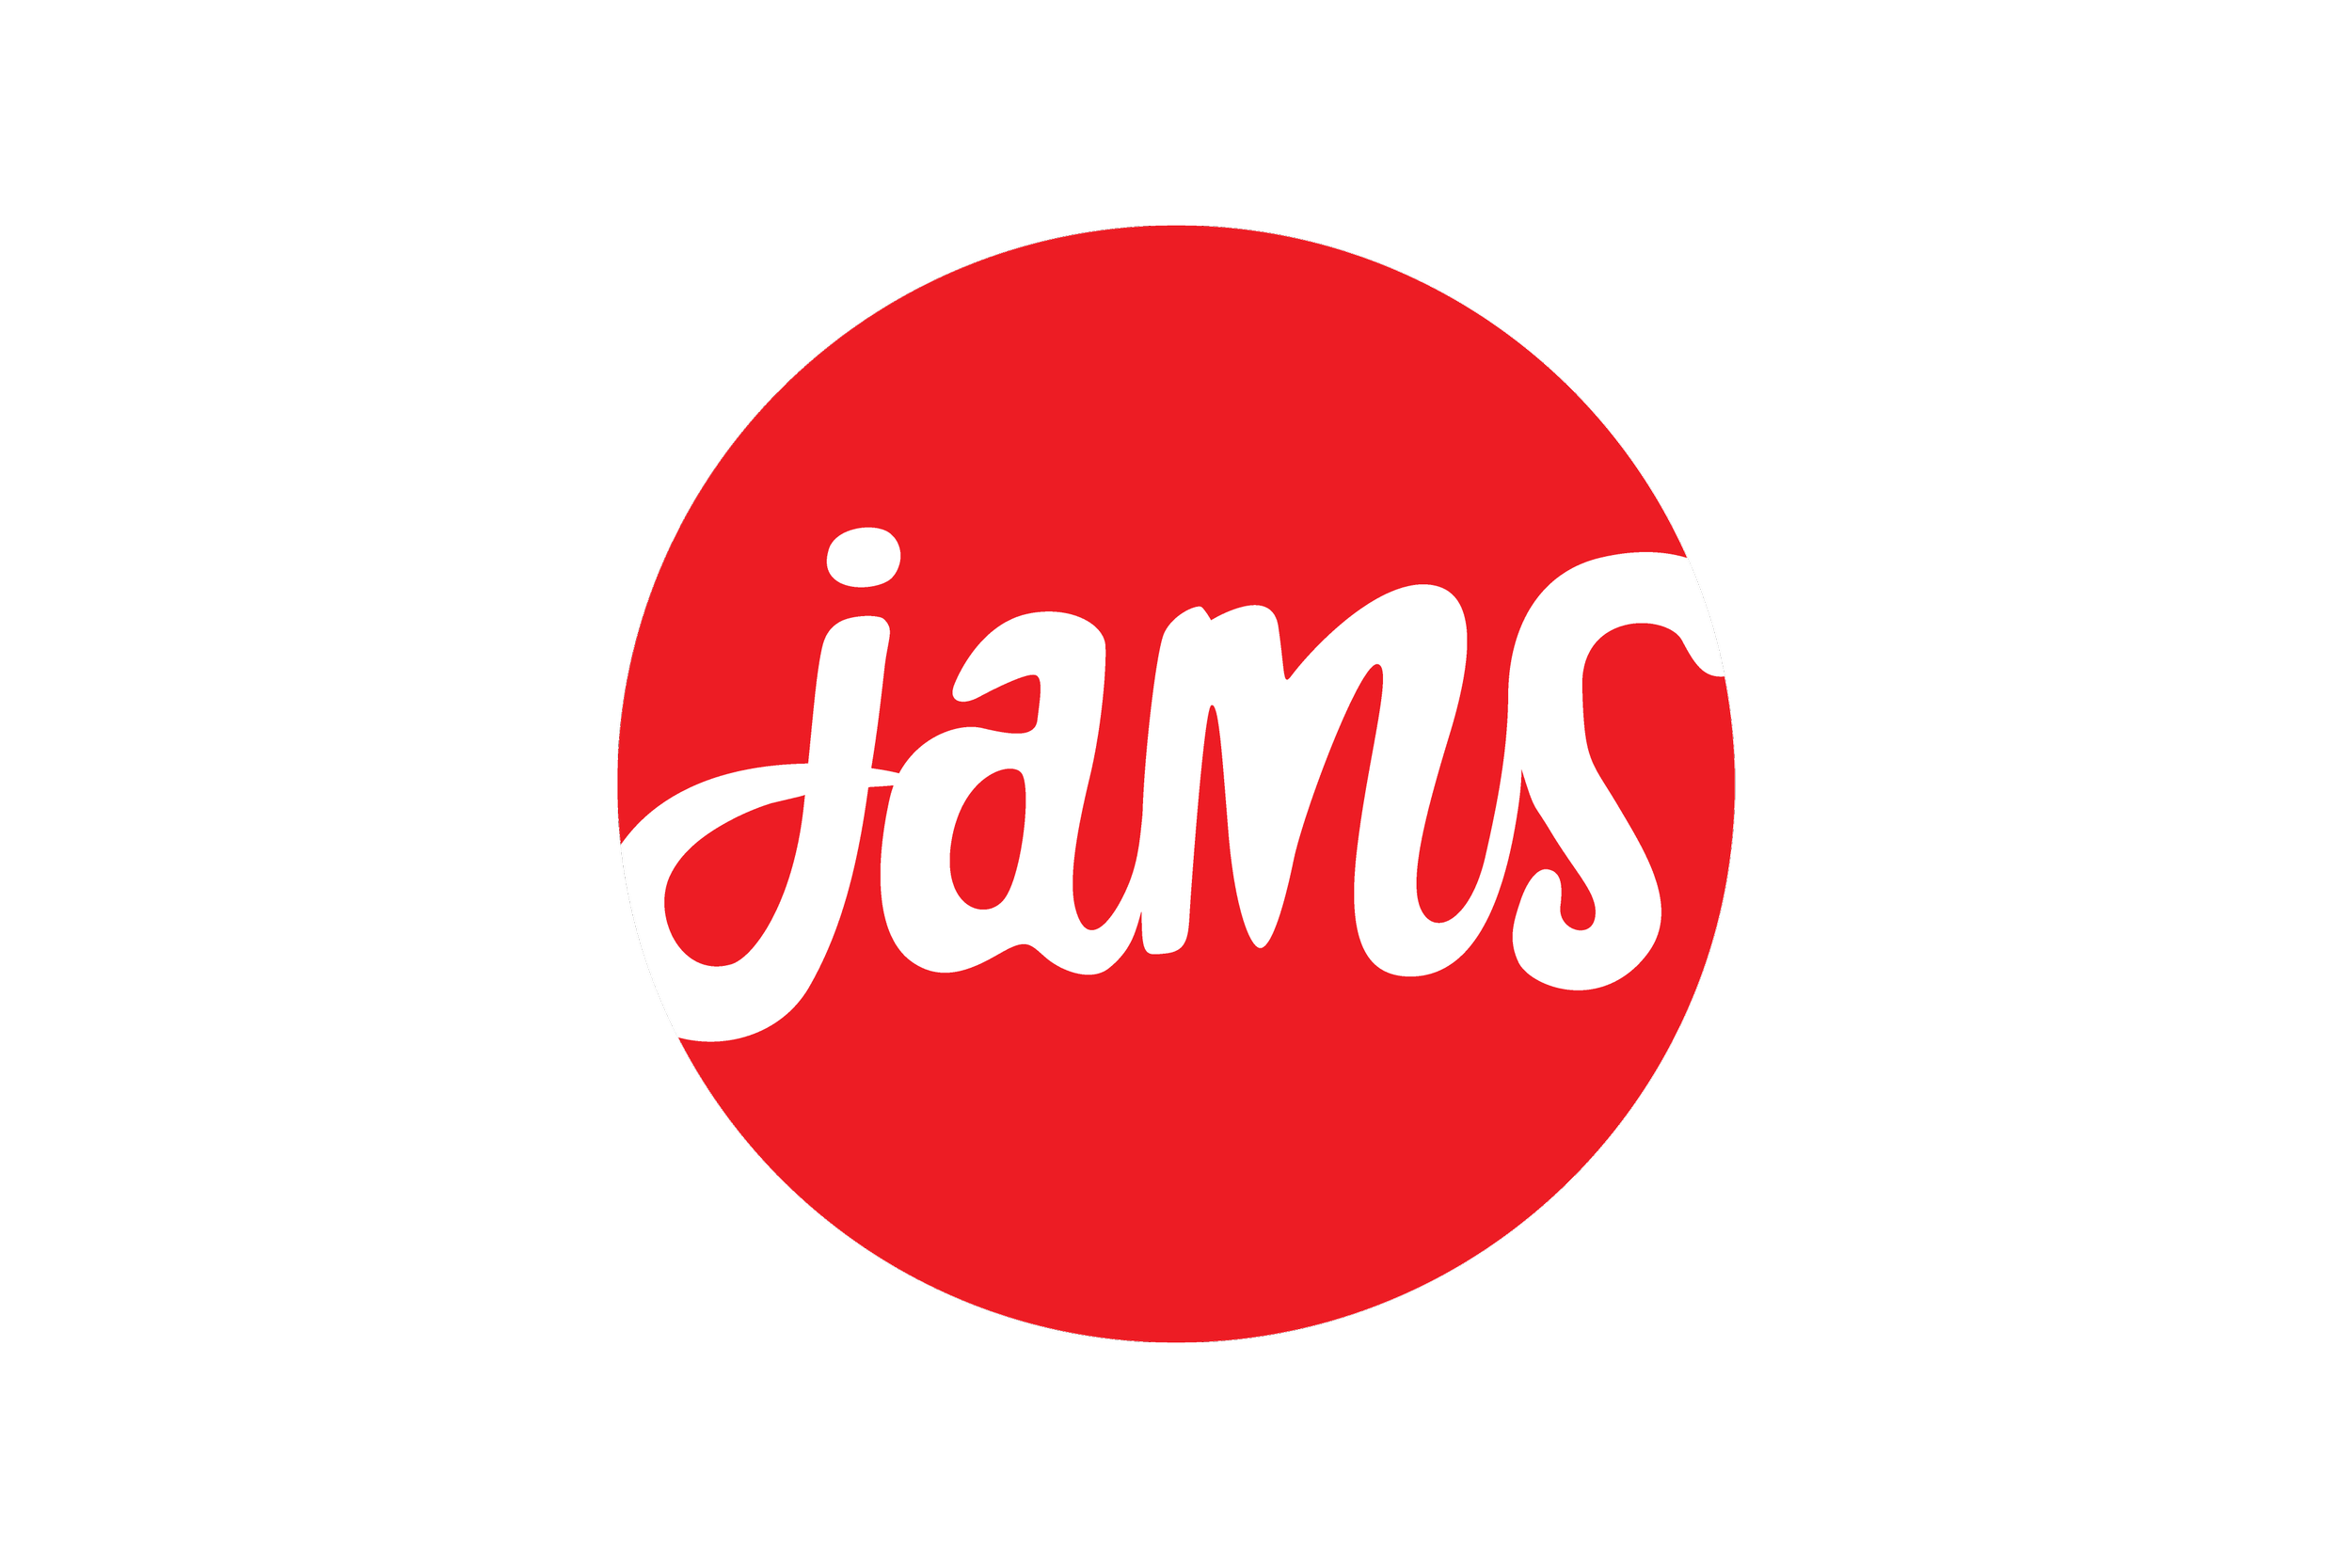 Jams logo (red circle)wbg.png